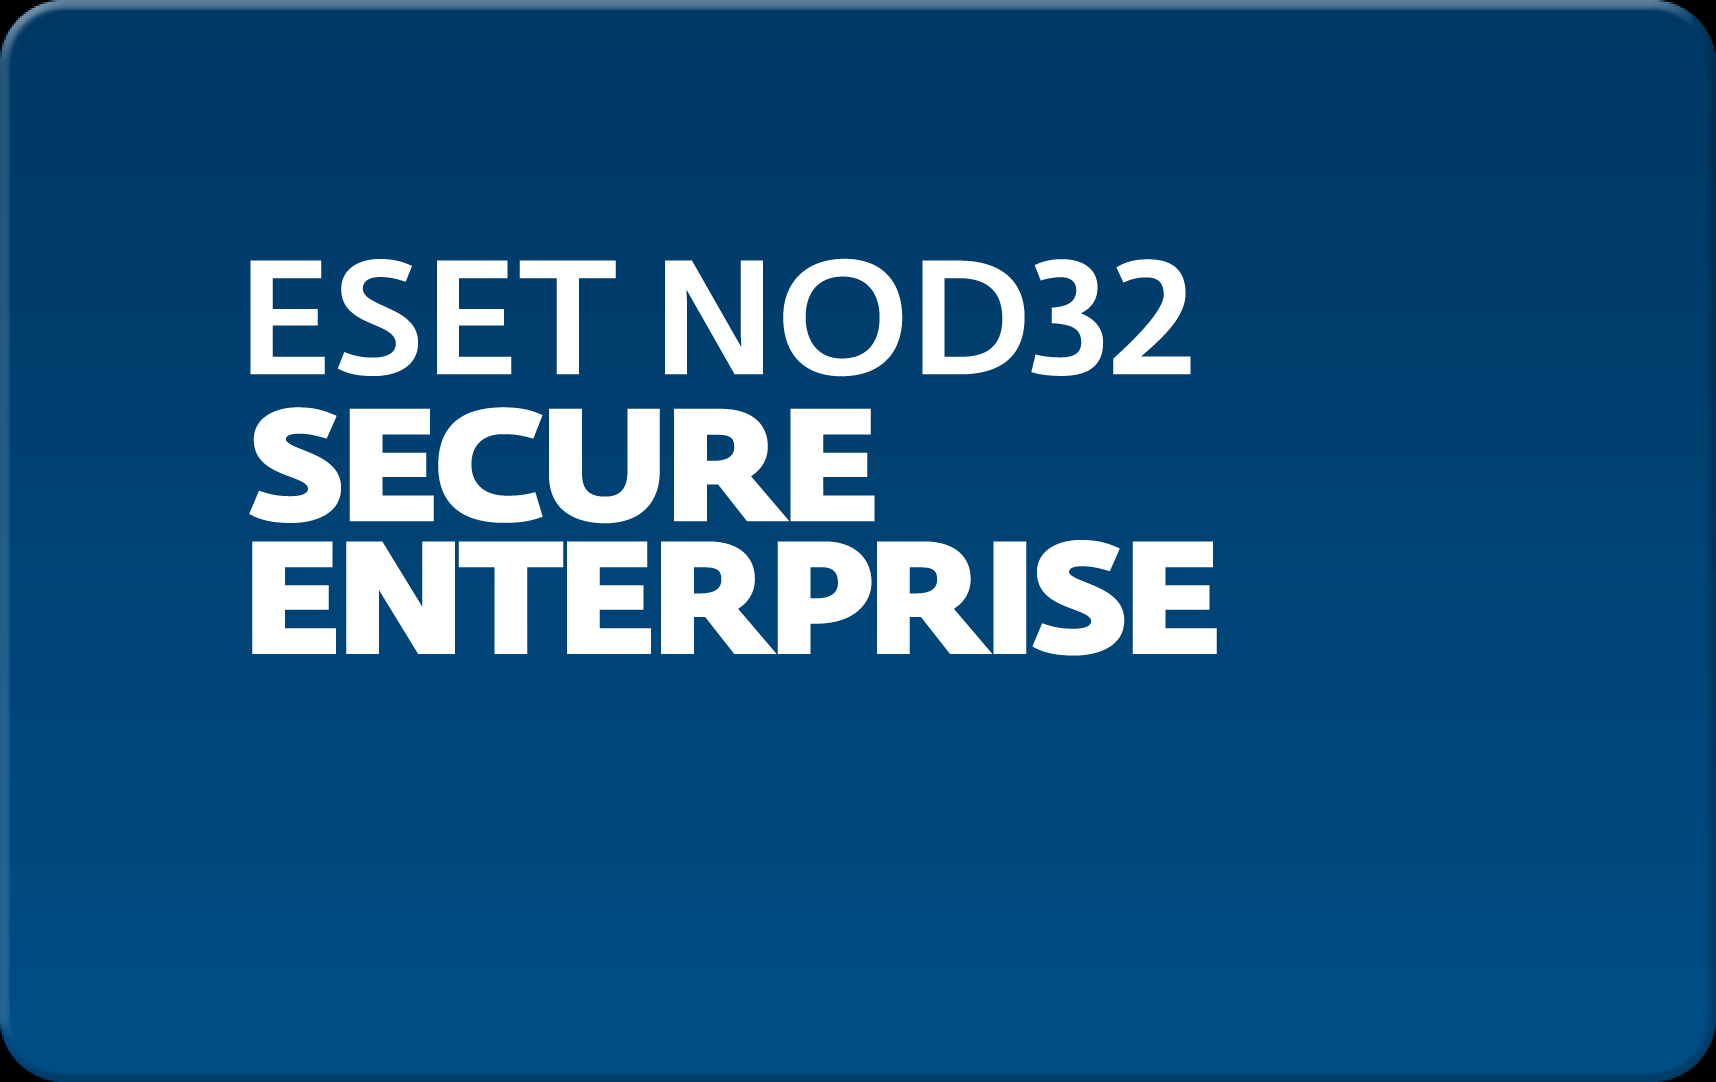        Eset NOD32 Secure Enterprise  153 